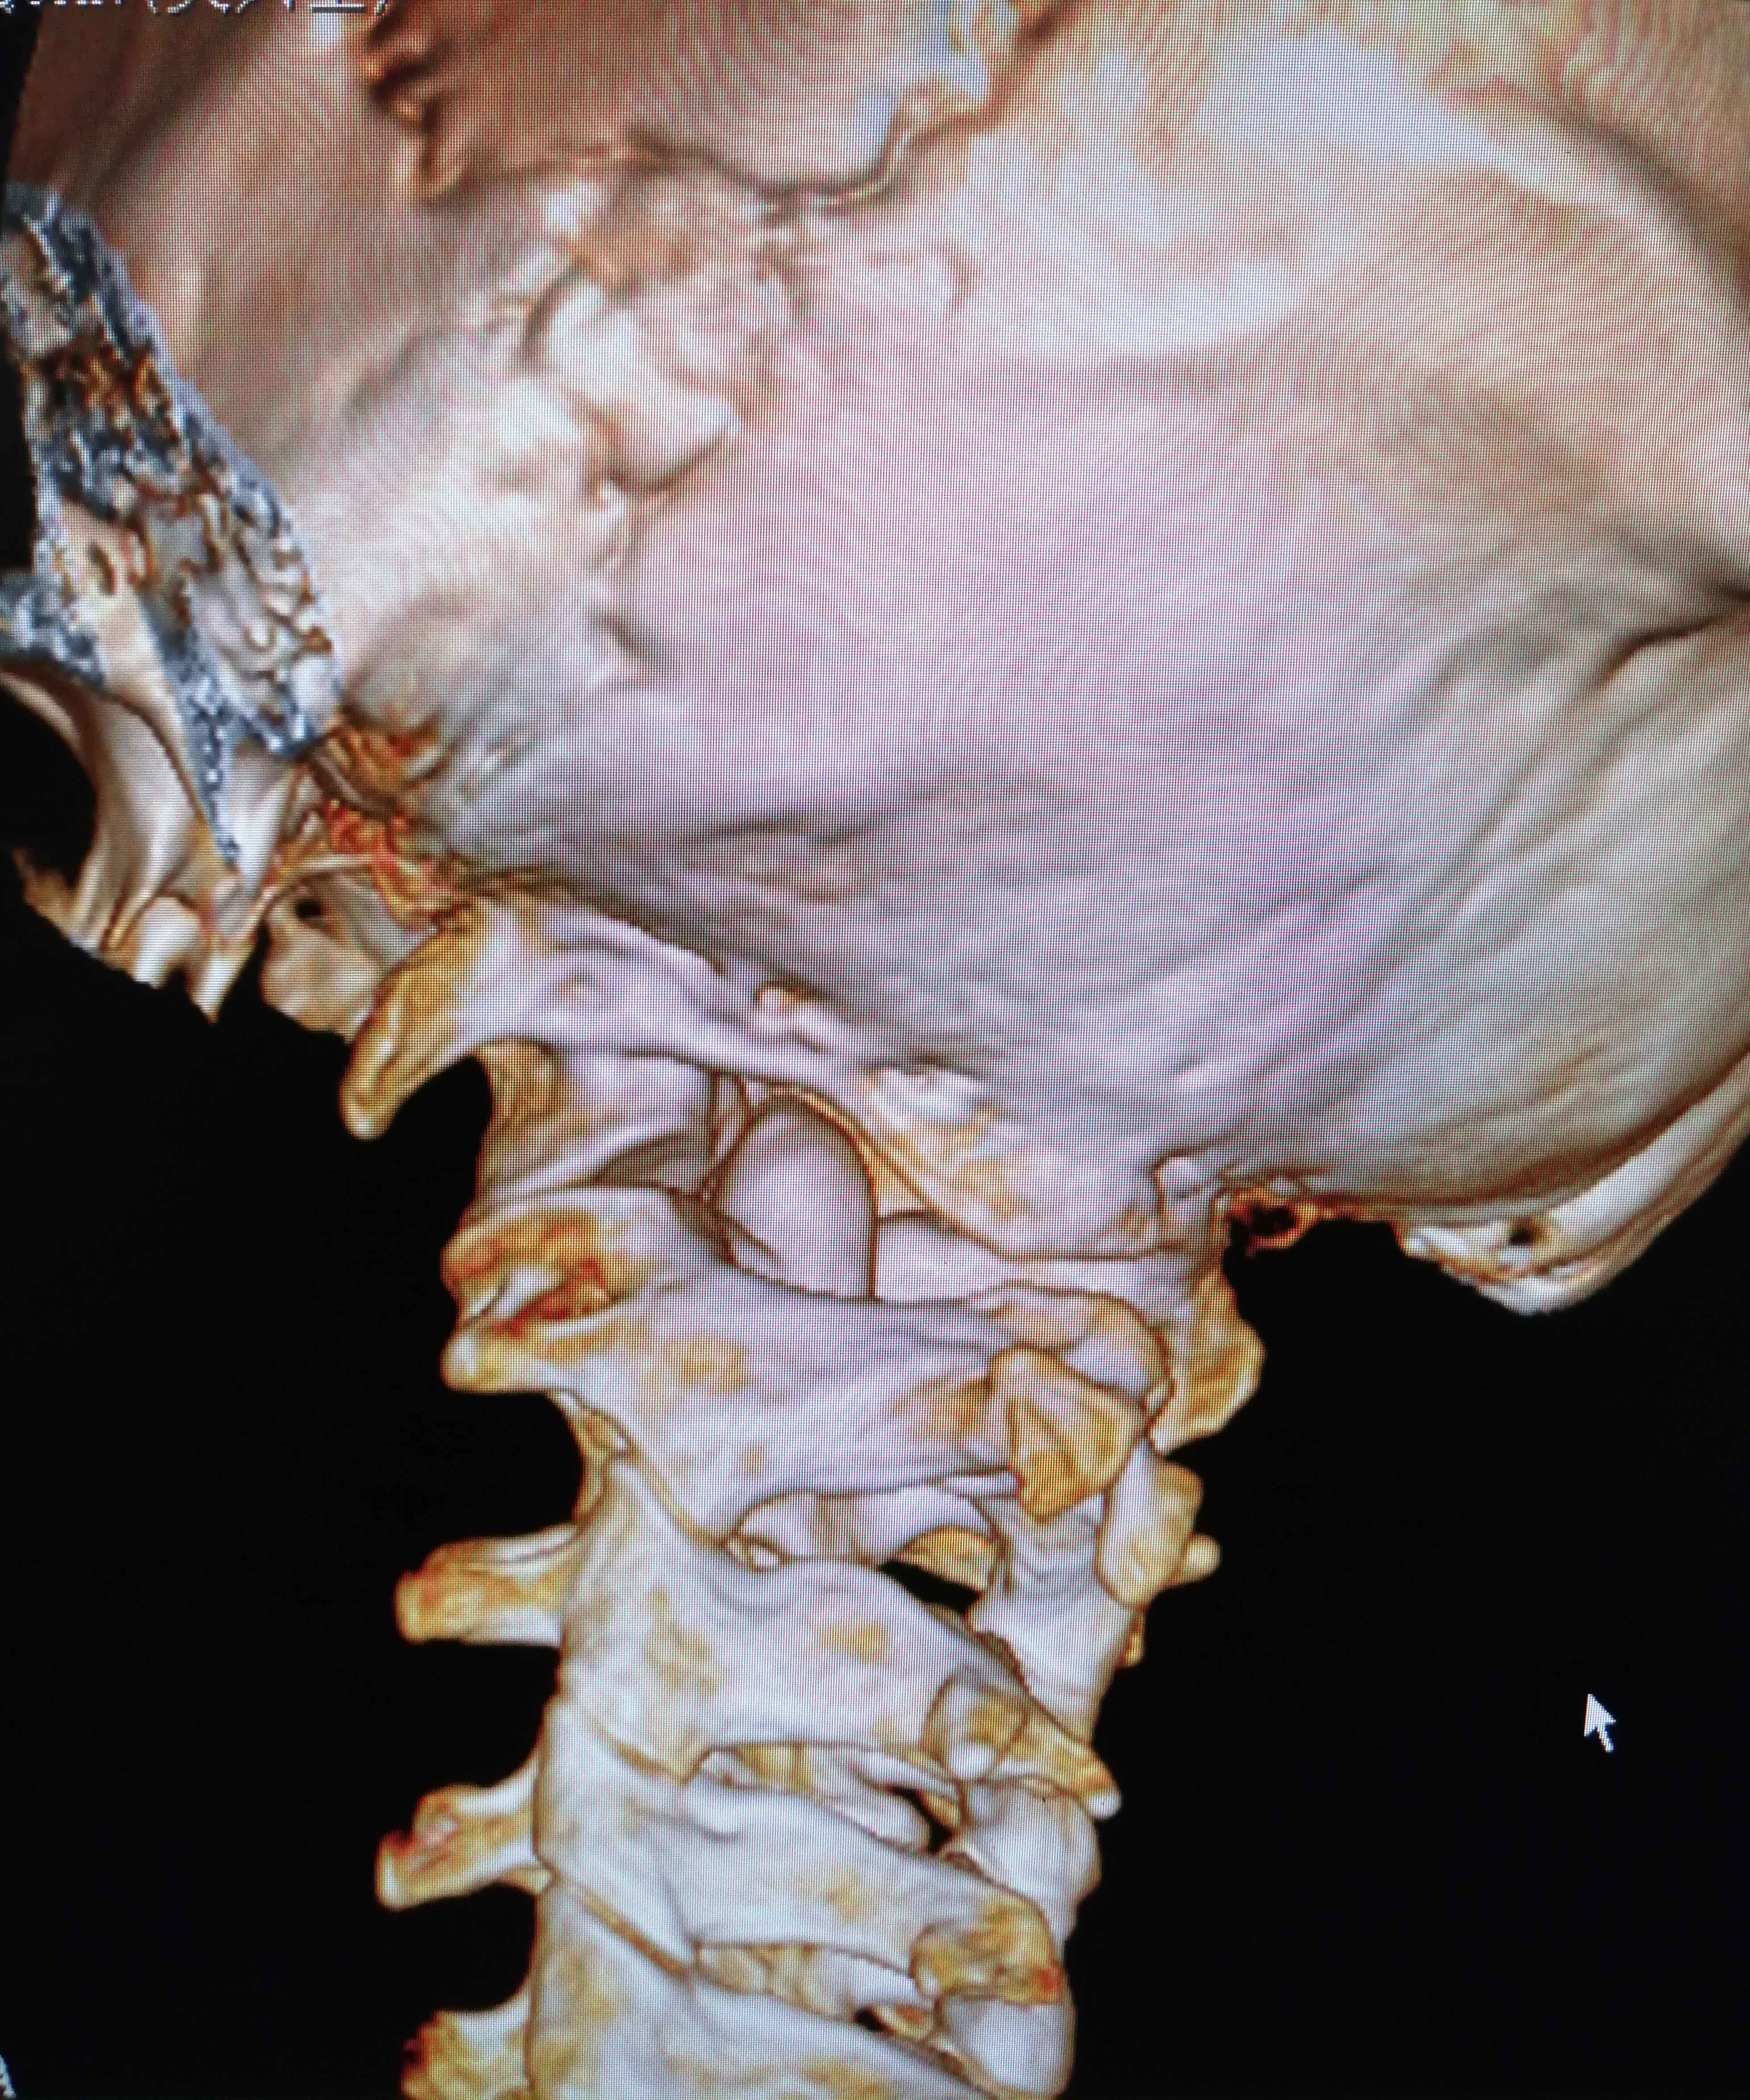 病例:颈部疼痛伴双上肢麻木,原来是寰枢椎失稳症! 